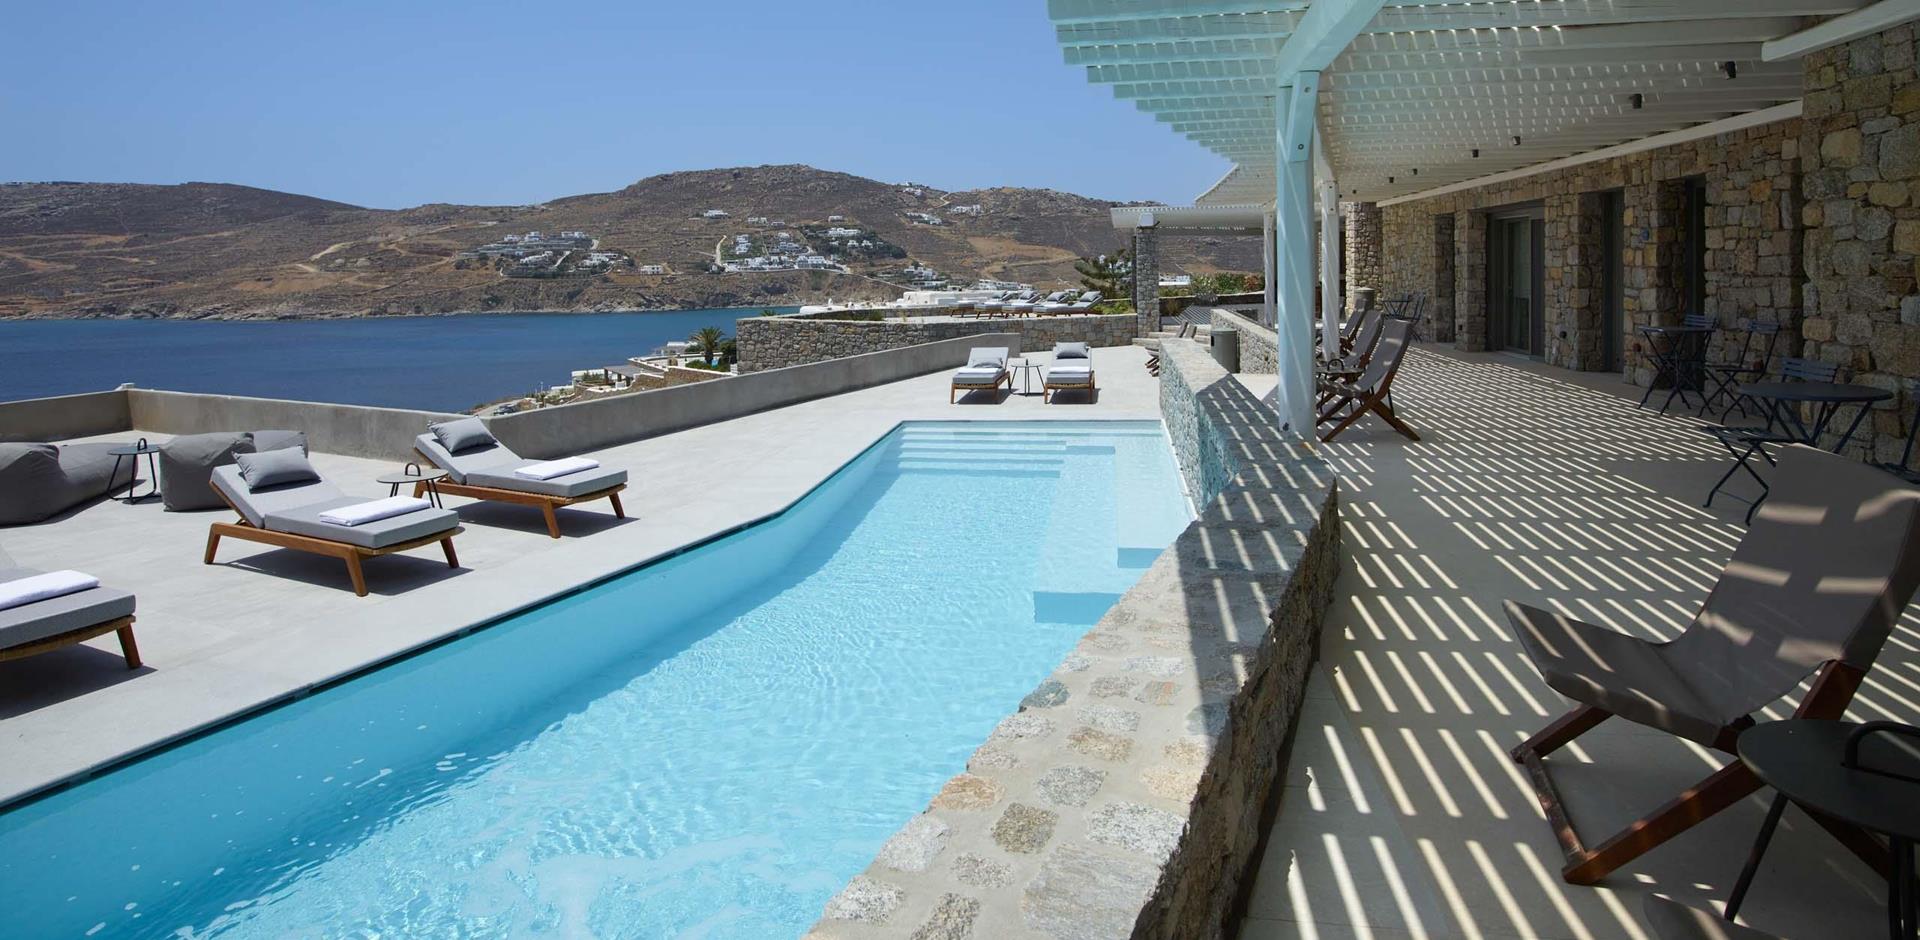 Pool area, Villa Coral, Mykonos, Greece, Europe